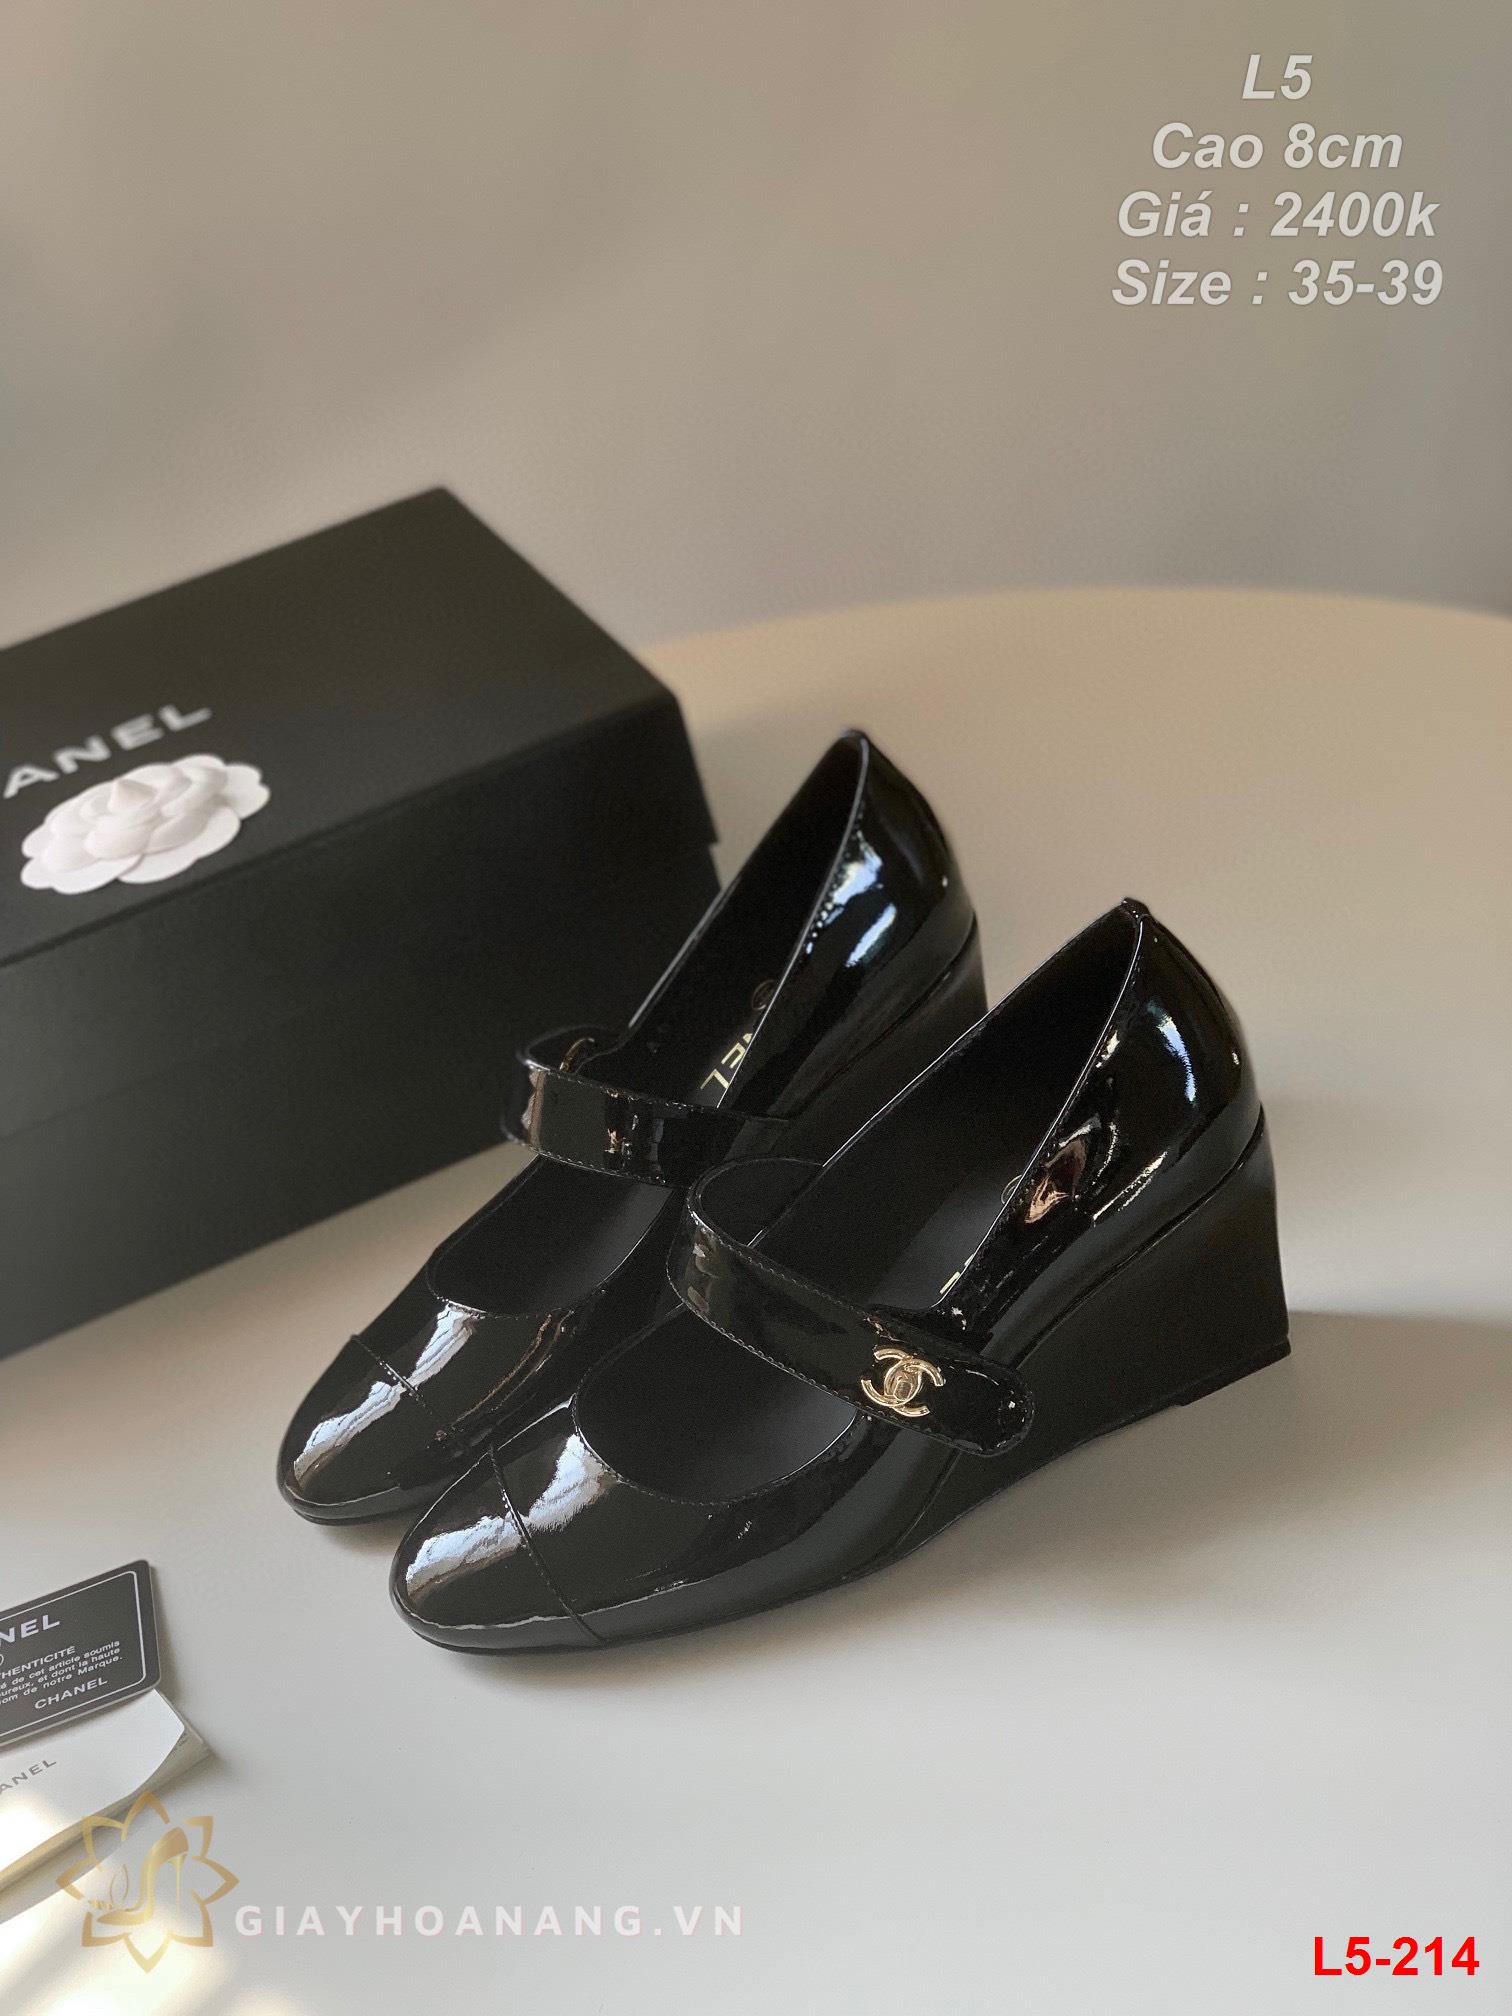 L5-214 Chanel giày cao 8cm siêu cấp